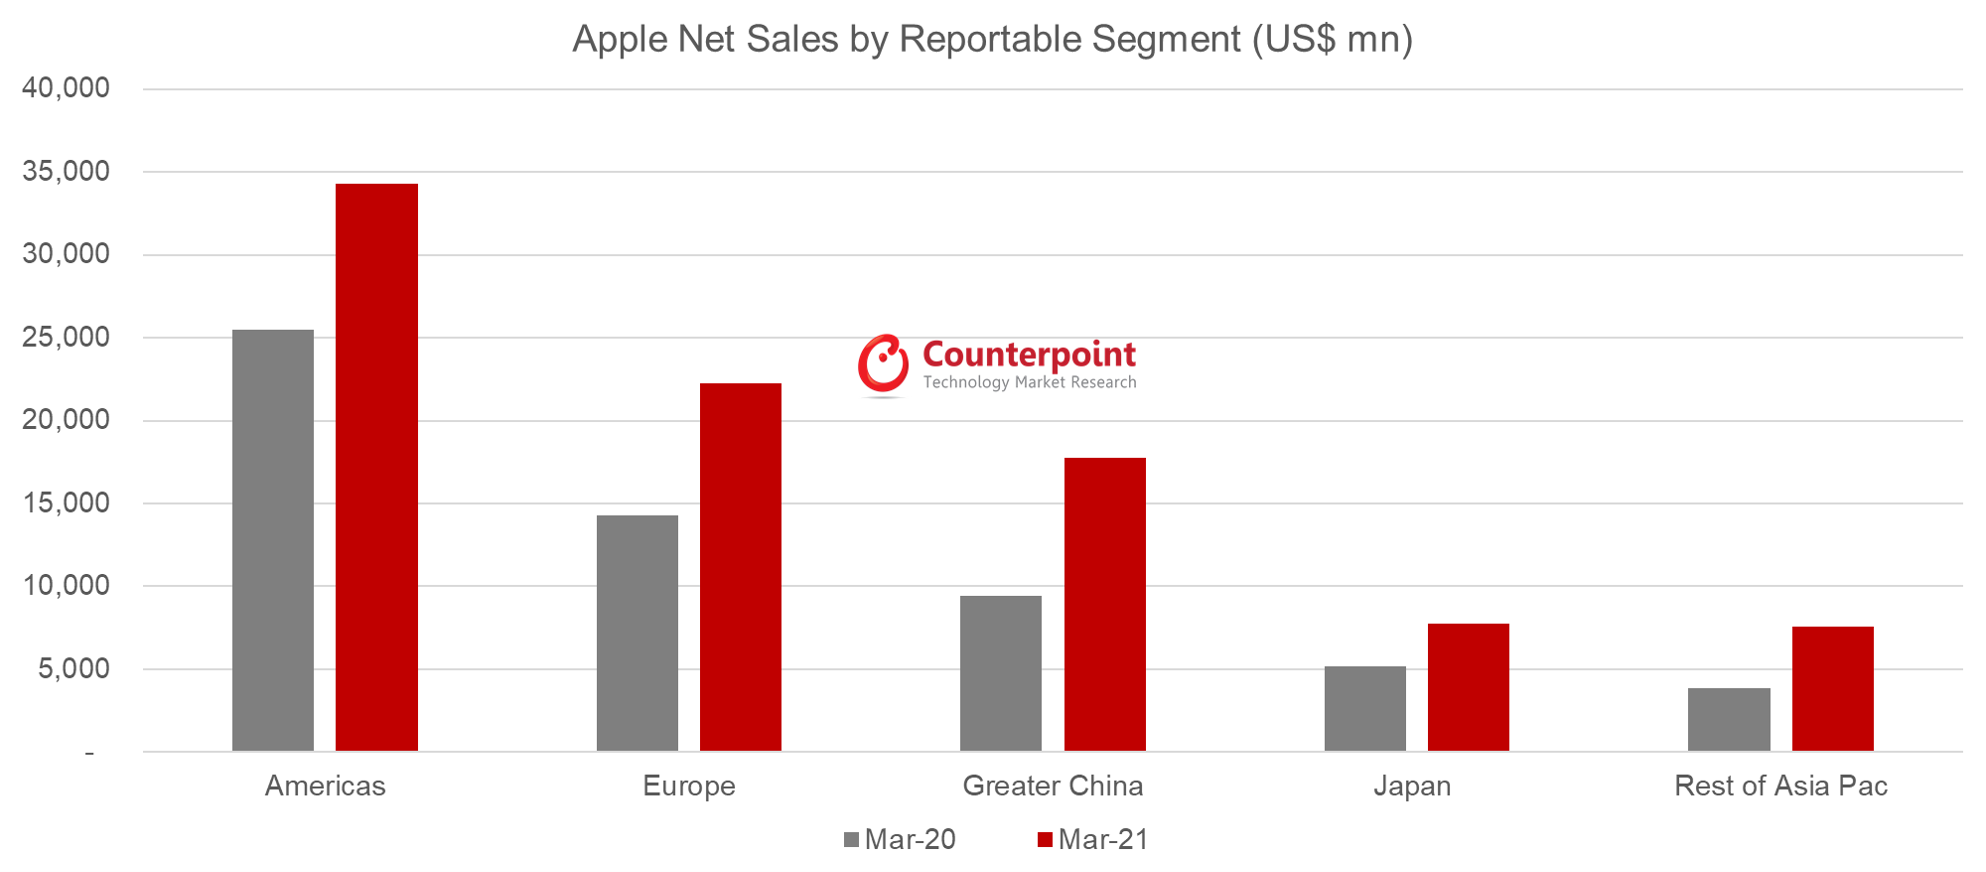 Counterpoint Research按可报告细分市场划分的苹果净销售额